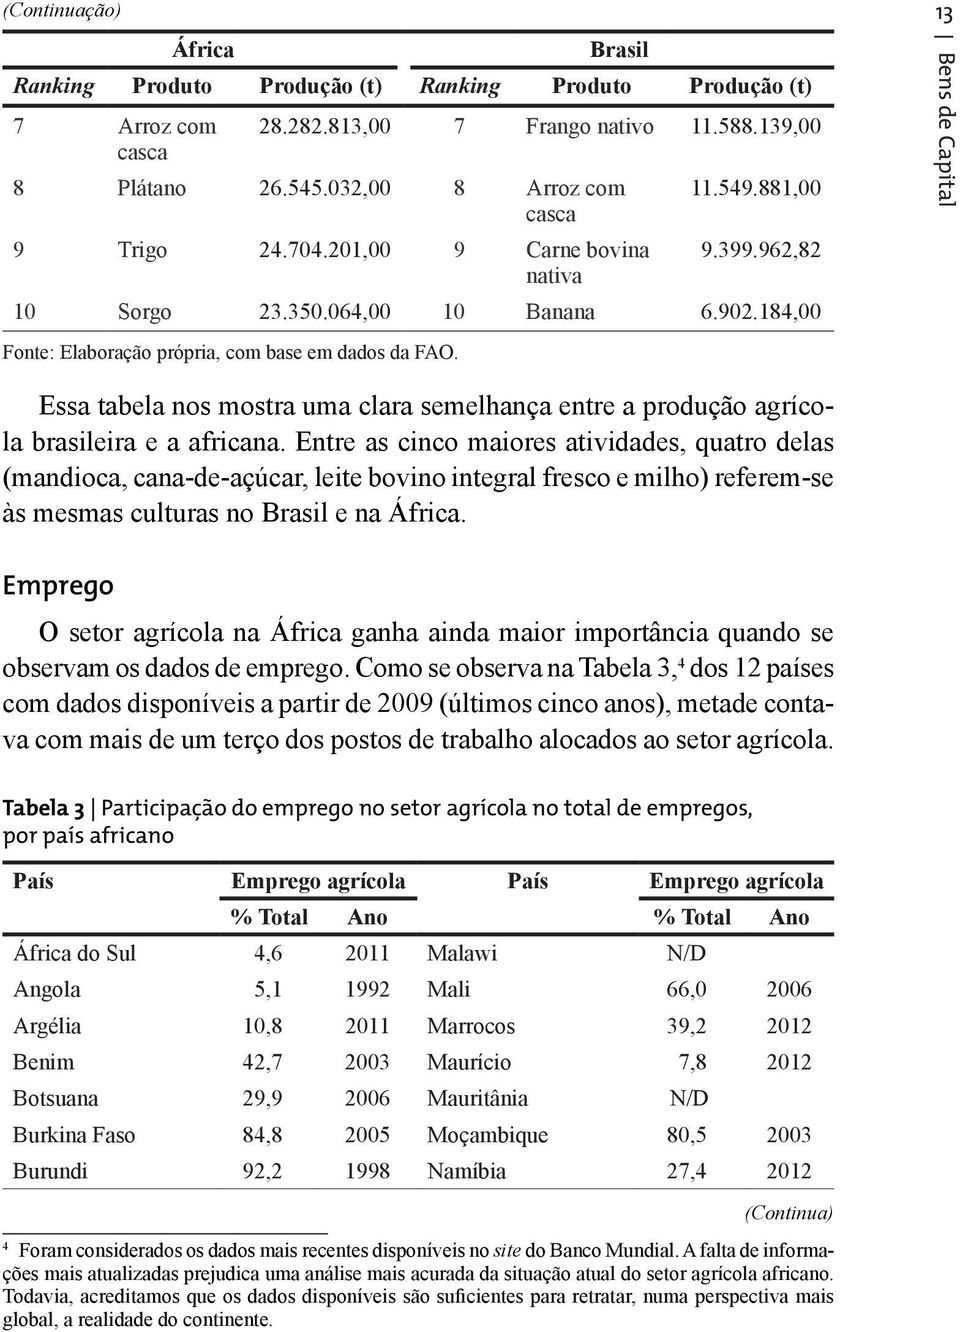 13 Bens de Capital Essa tabela nos mostra uma clara semelhança entre a produção agrícola brasileira e a africana.